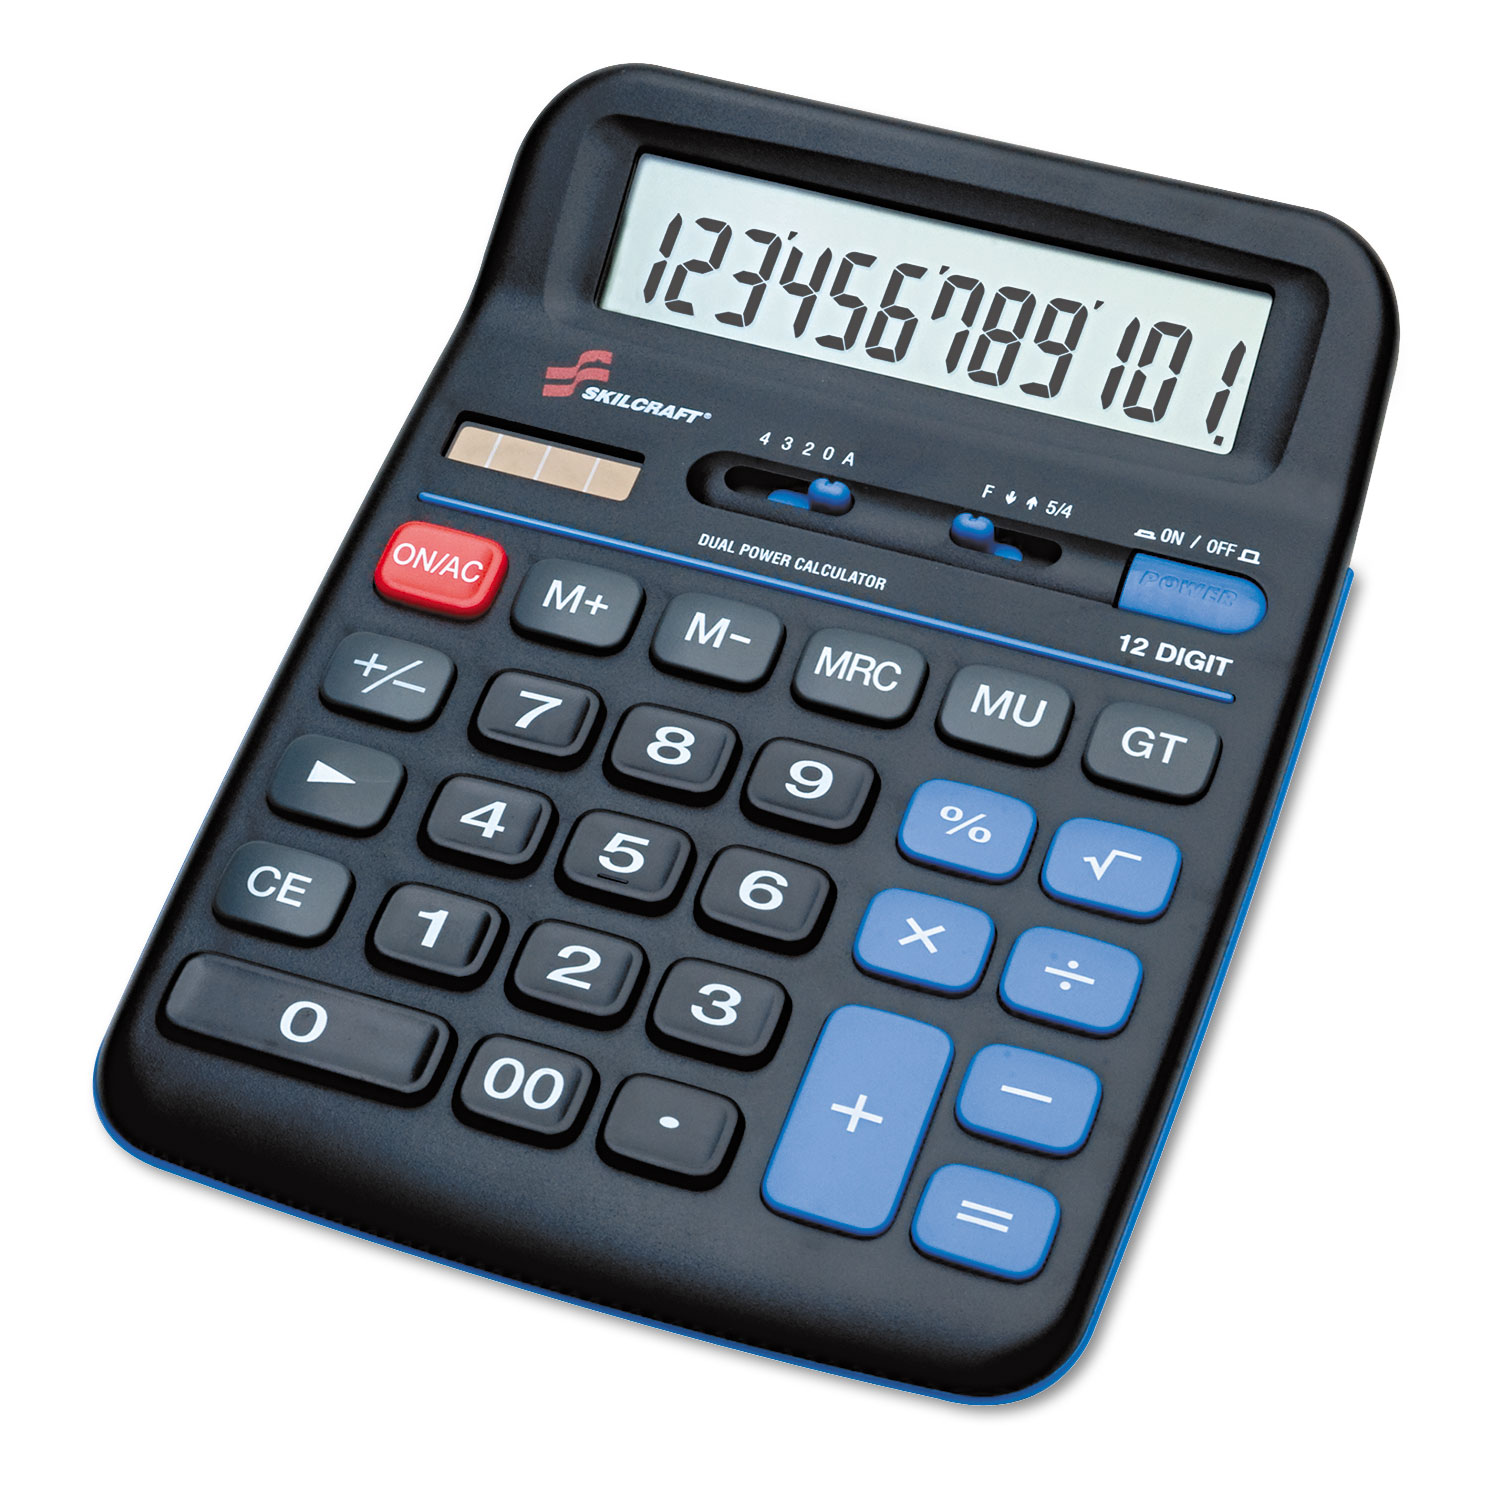 graphmatica calculator image